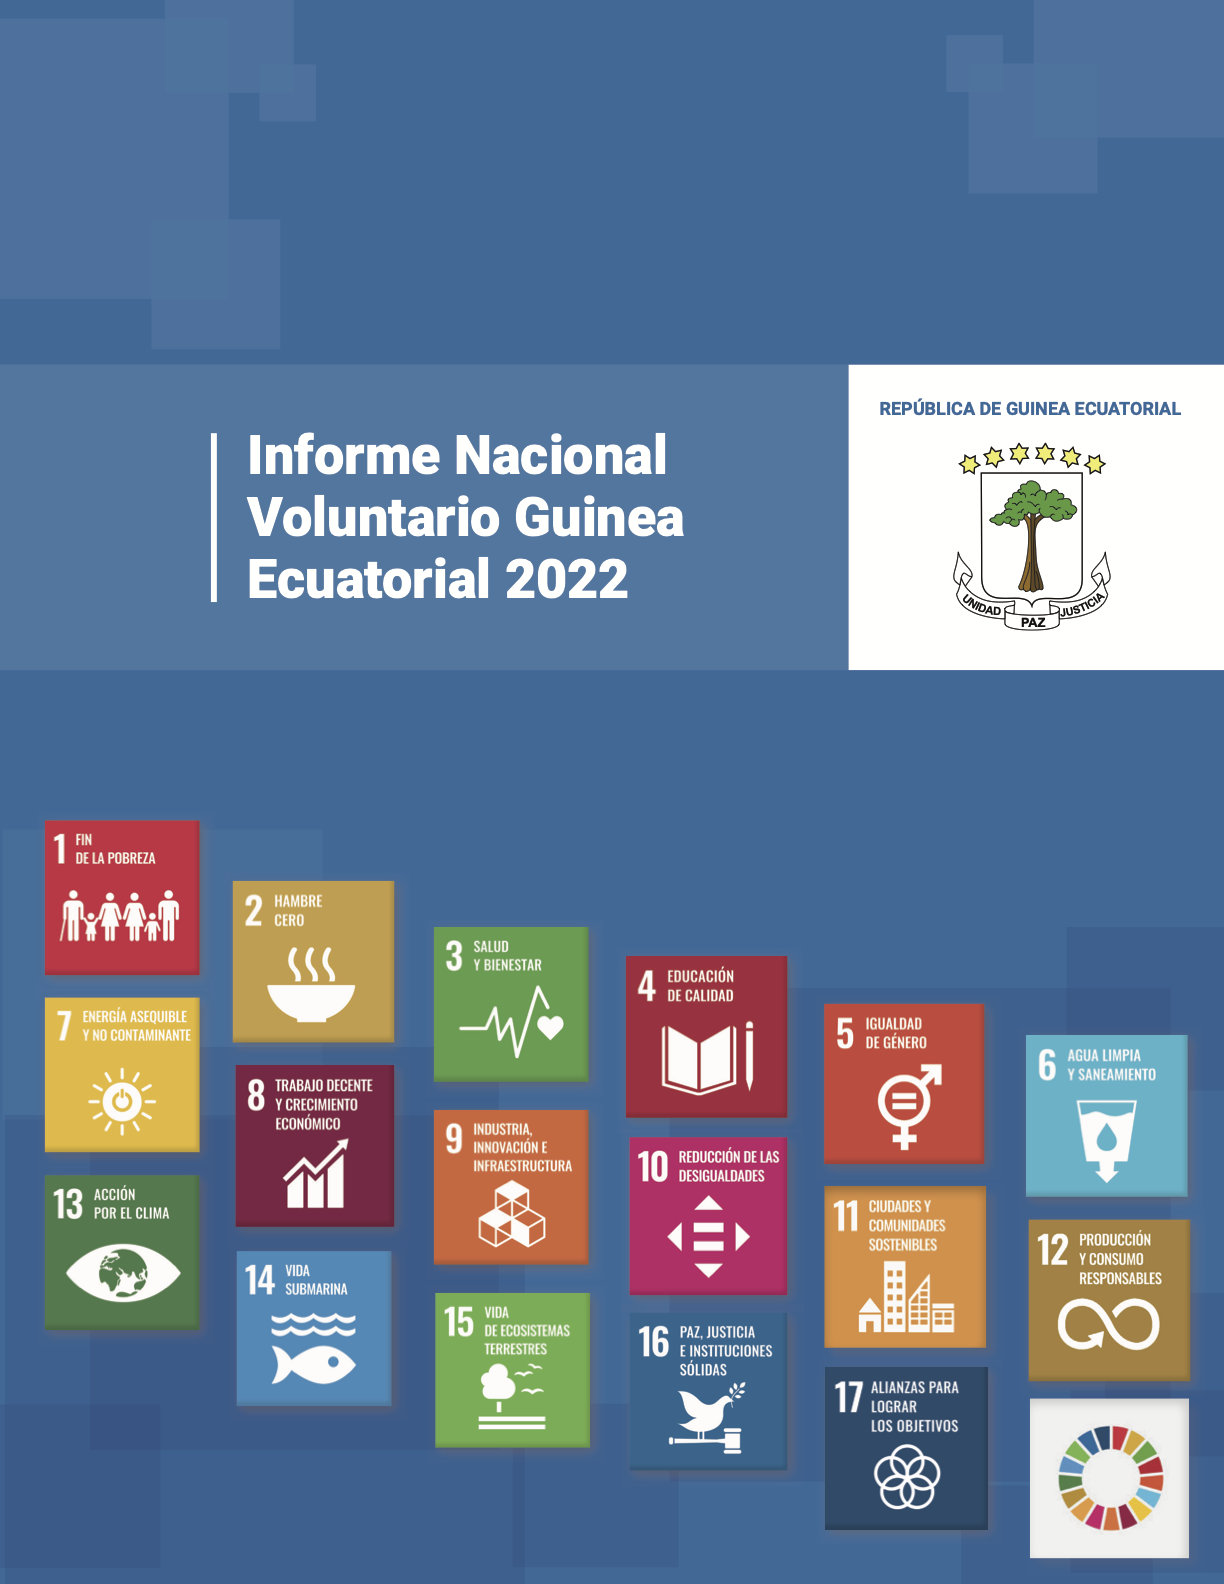 Informe Nacional Voluntario (INV) Guinea Ecuatorial 2022